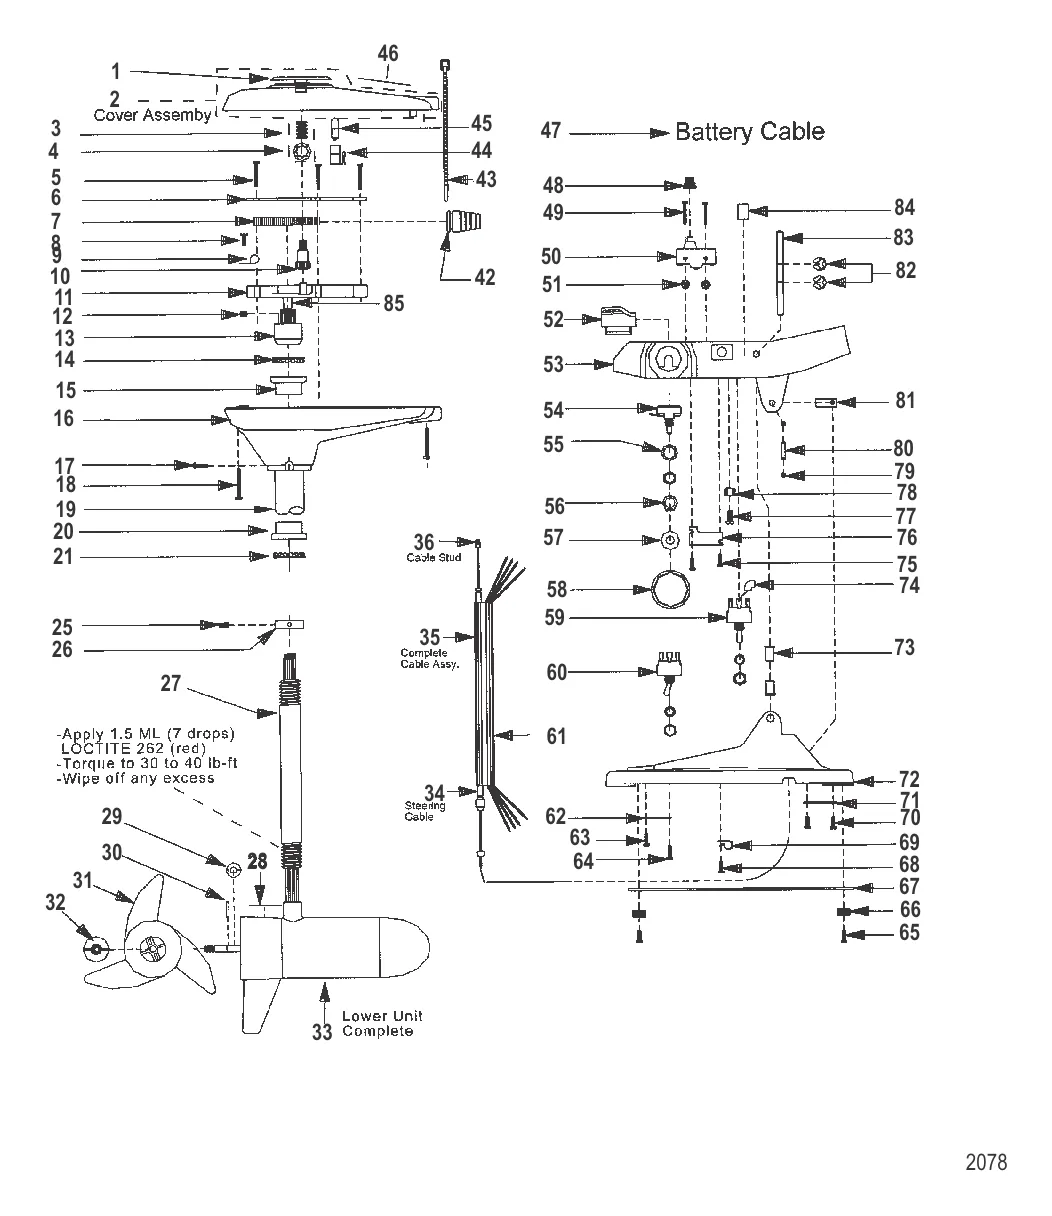 Двигатель для тралового лова в сборе (Модель 767) (24 В)